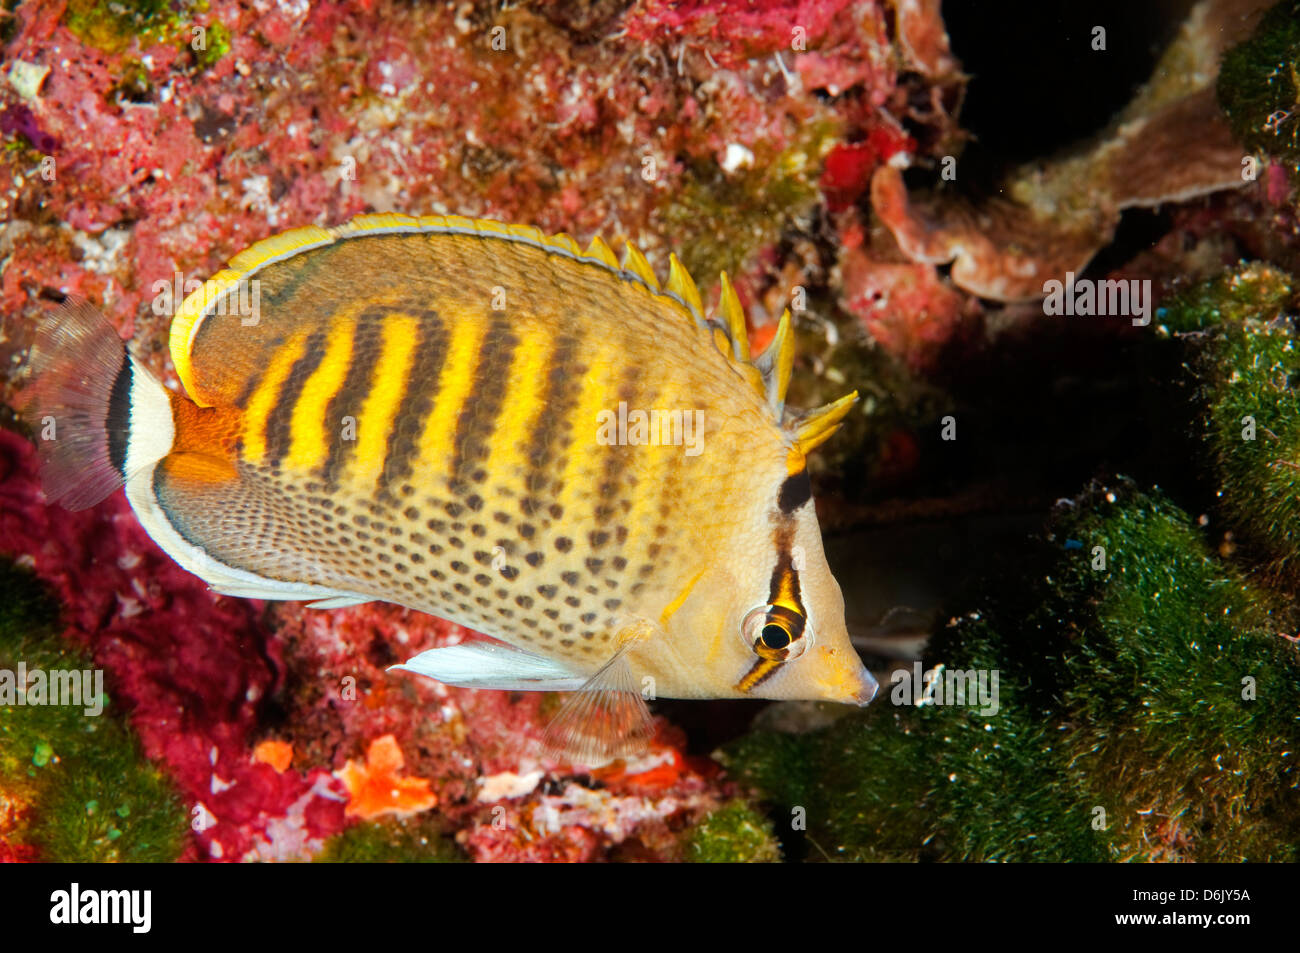 Spot banded butterflyfishes, Chaetodon punctatofasciatus, Sulawesi Indonesia Stock Photo